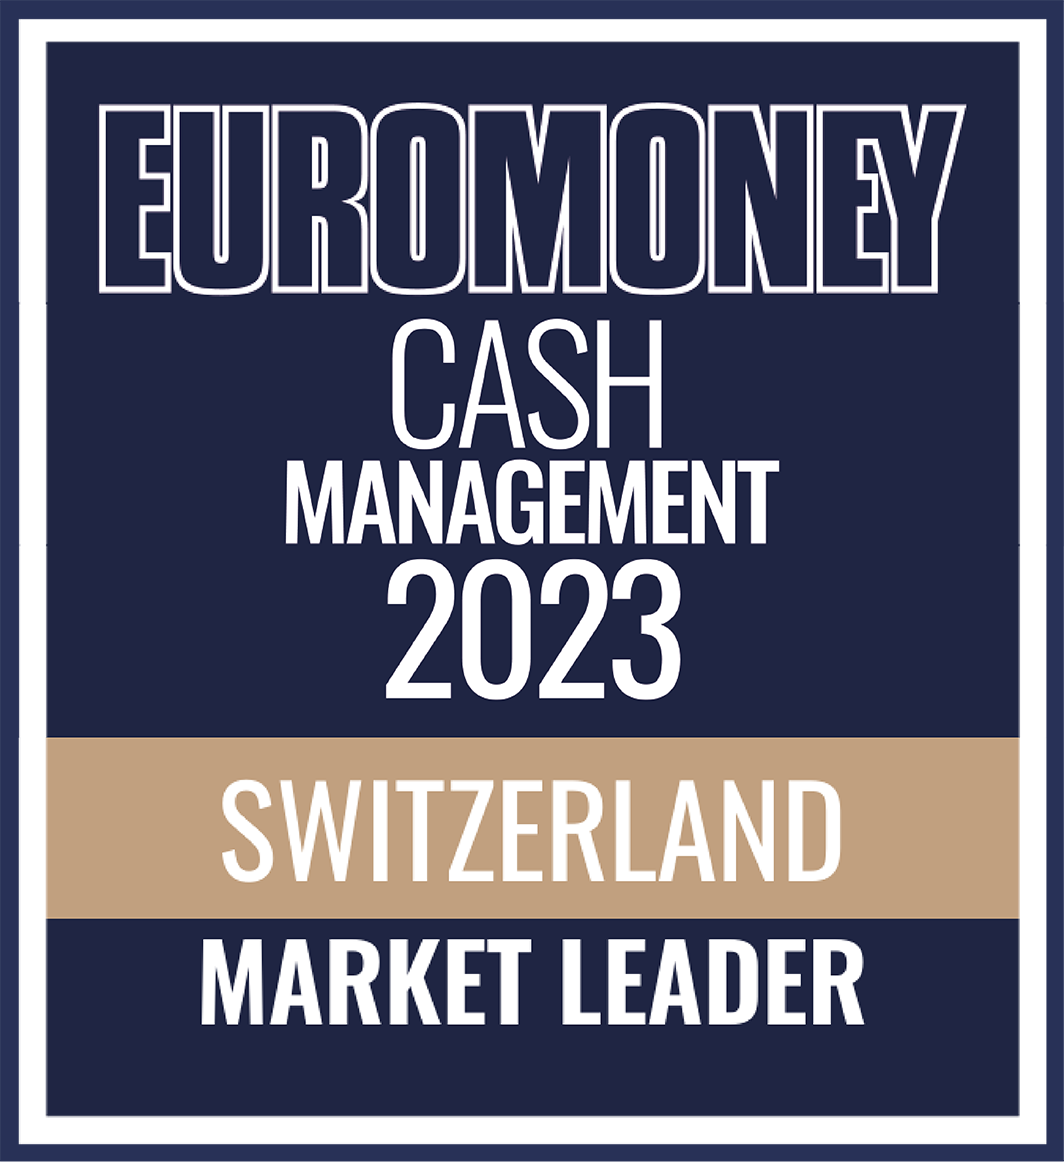 Euromoney cash management 2023 Logo du prix du leader du marché suisse